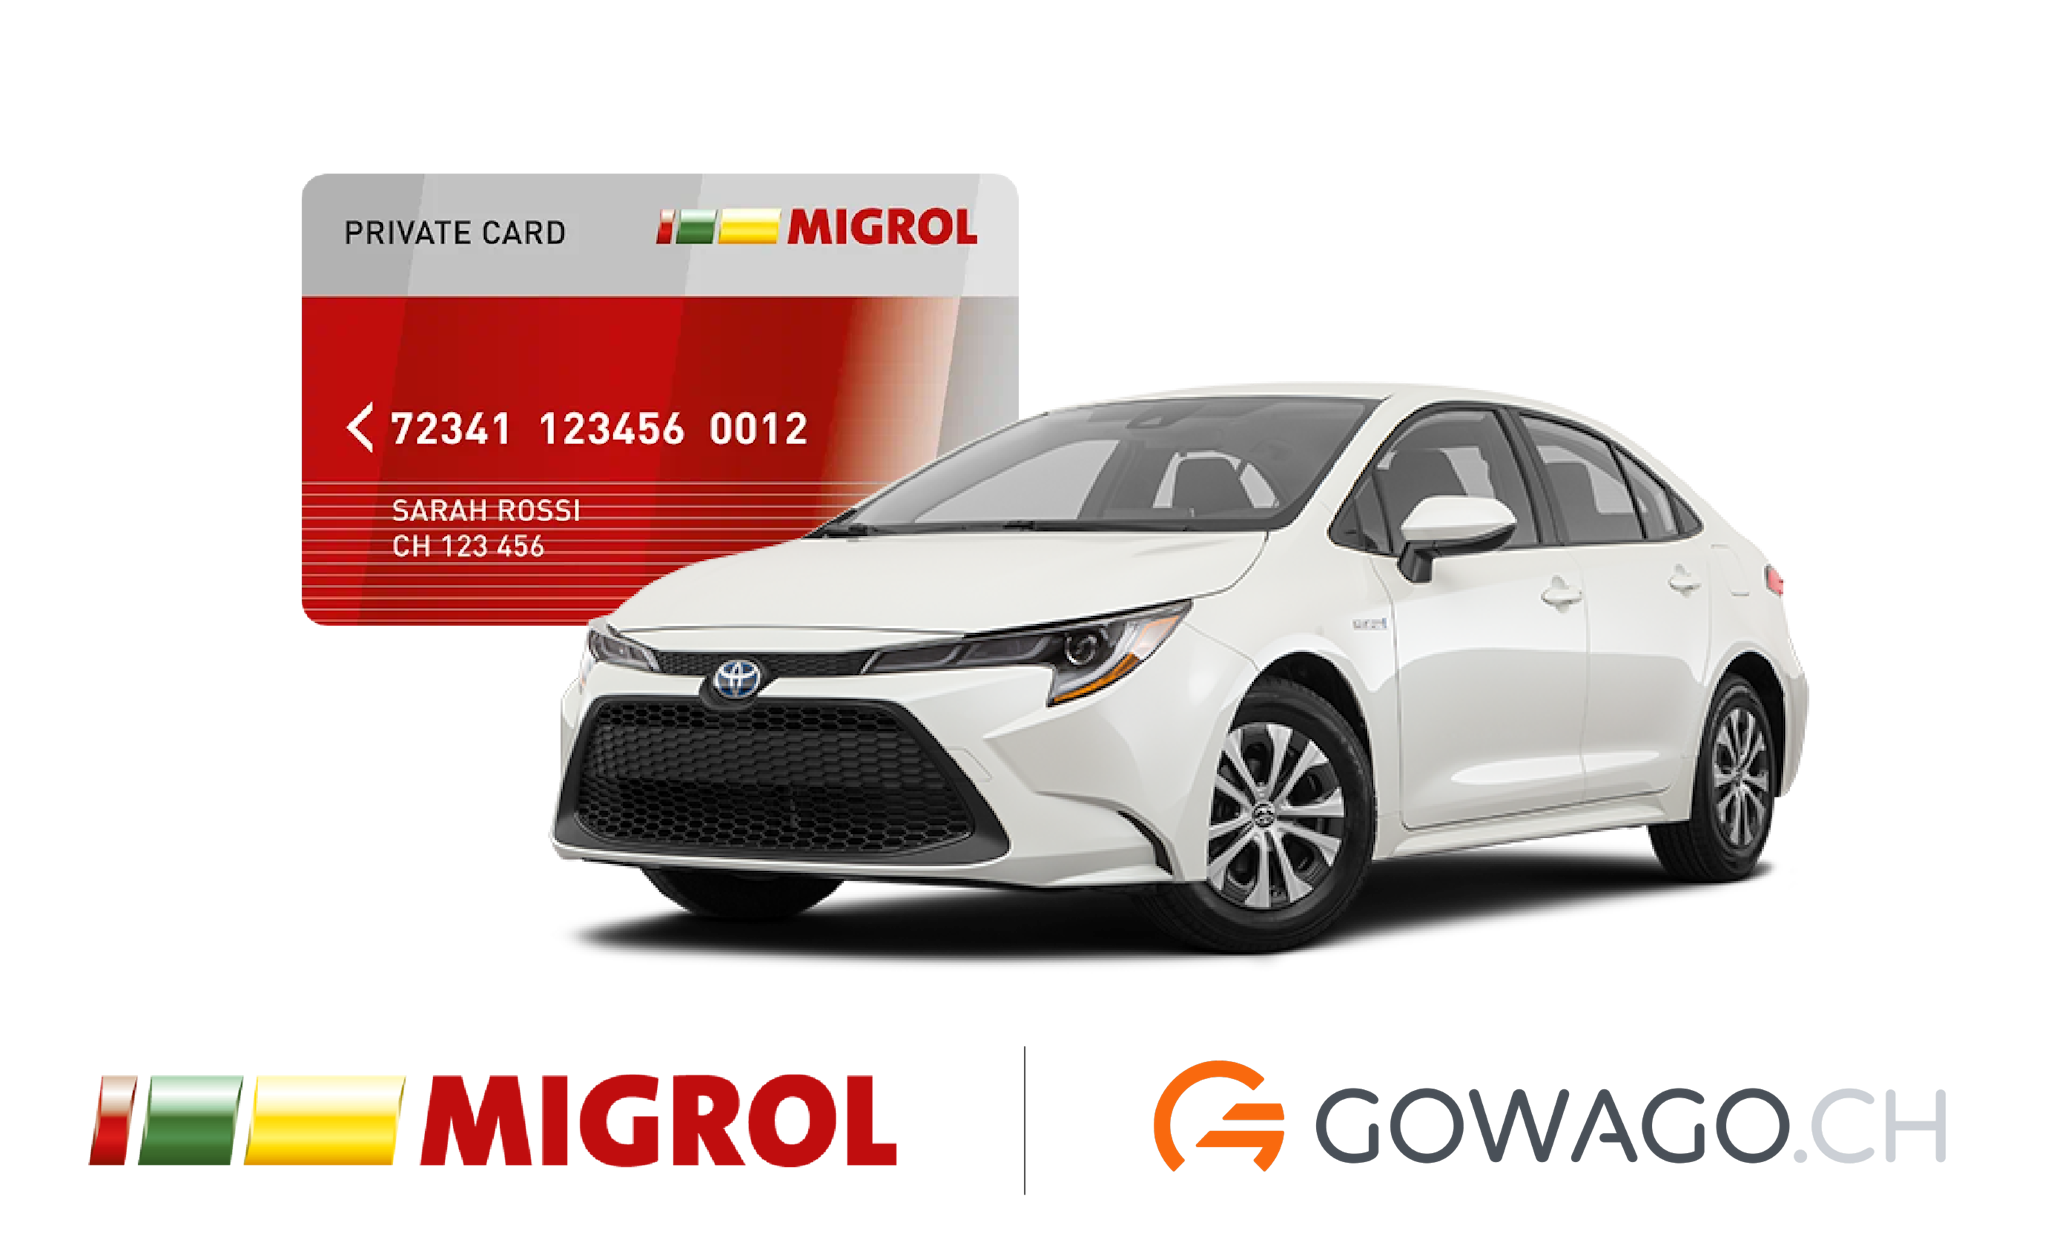 blog item card - Découvrez les nombreux avantages de la Migrolcard chez gowago.ch: rabais sur l'essence, le lavage, et plus encore.